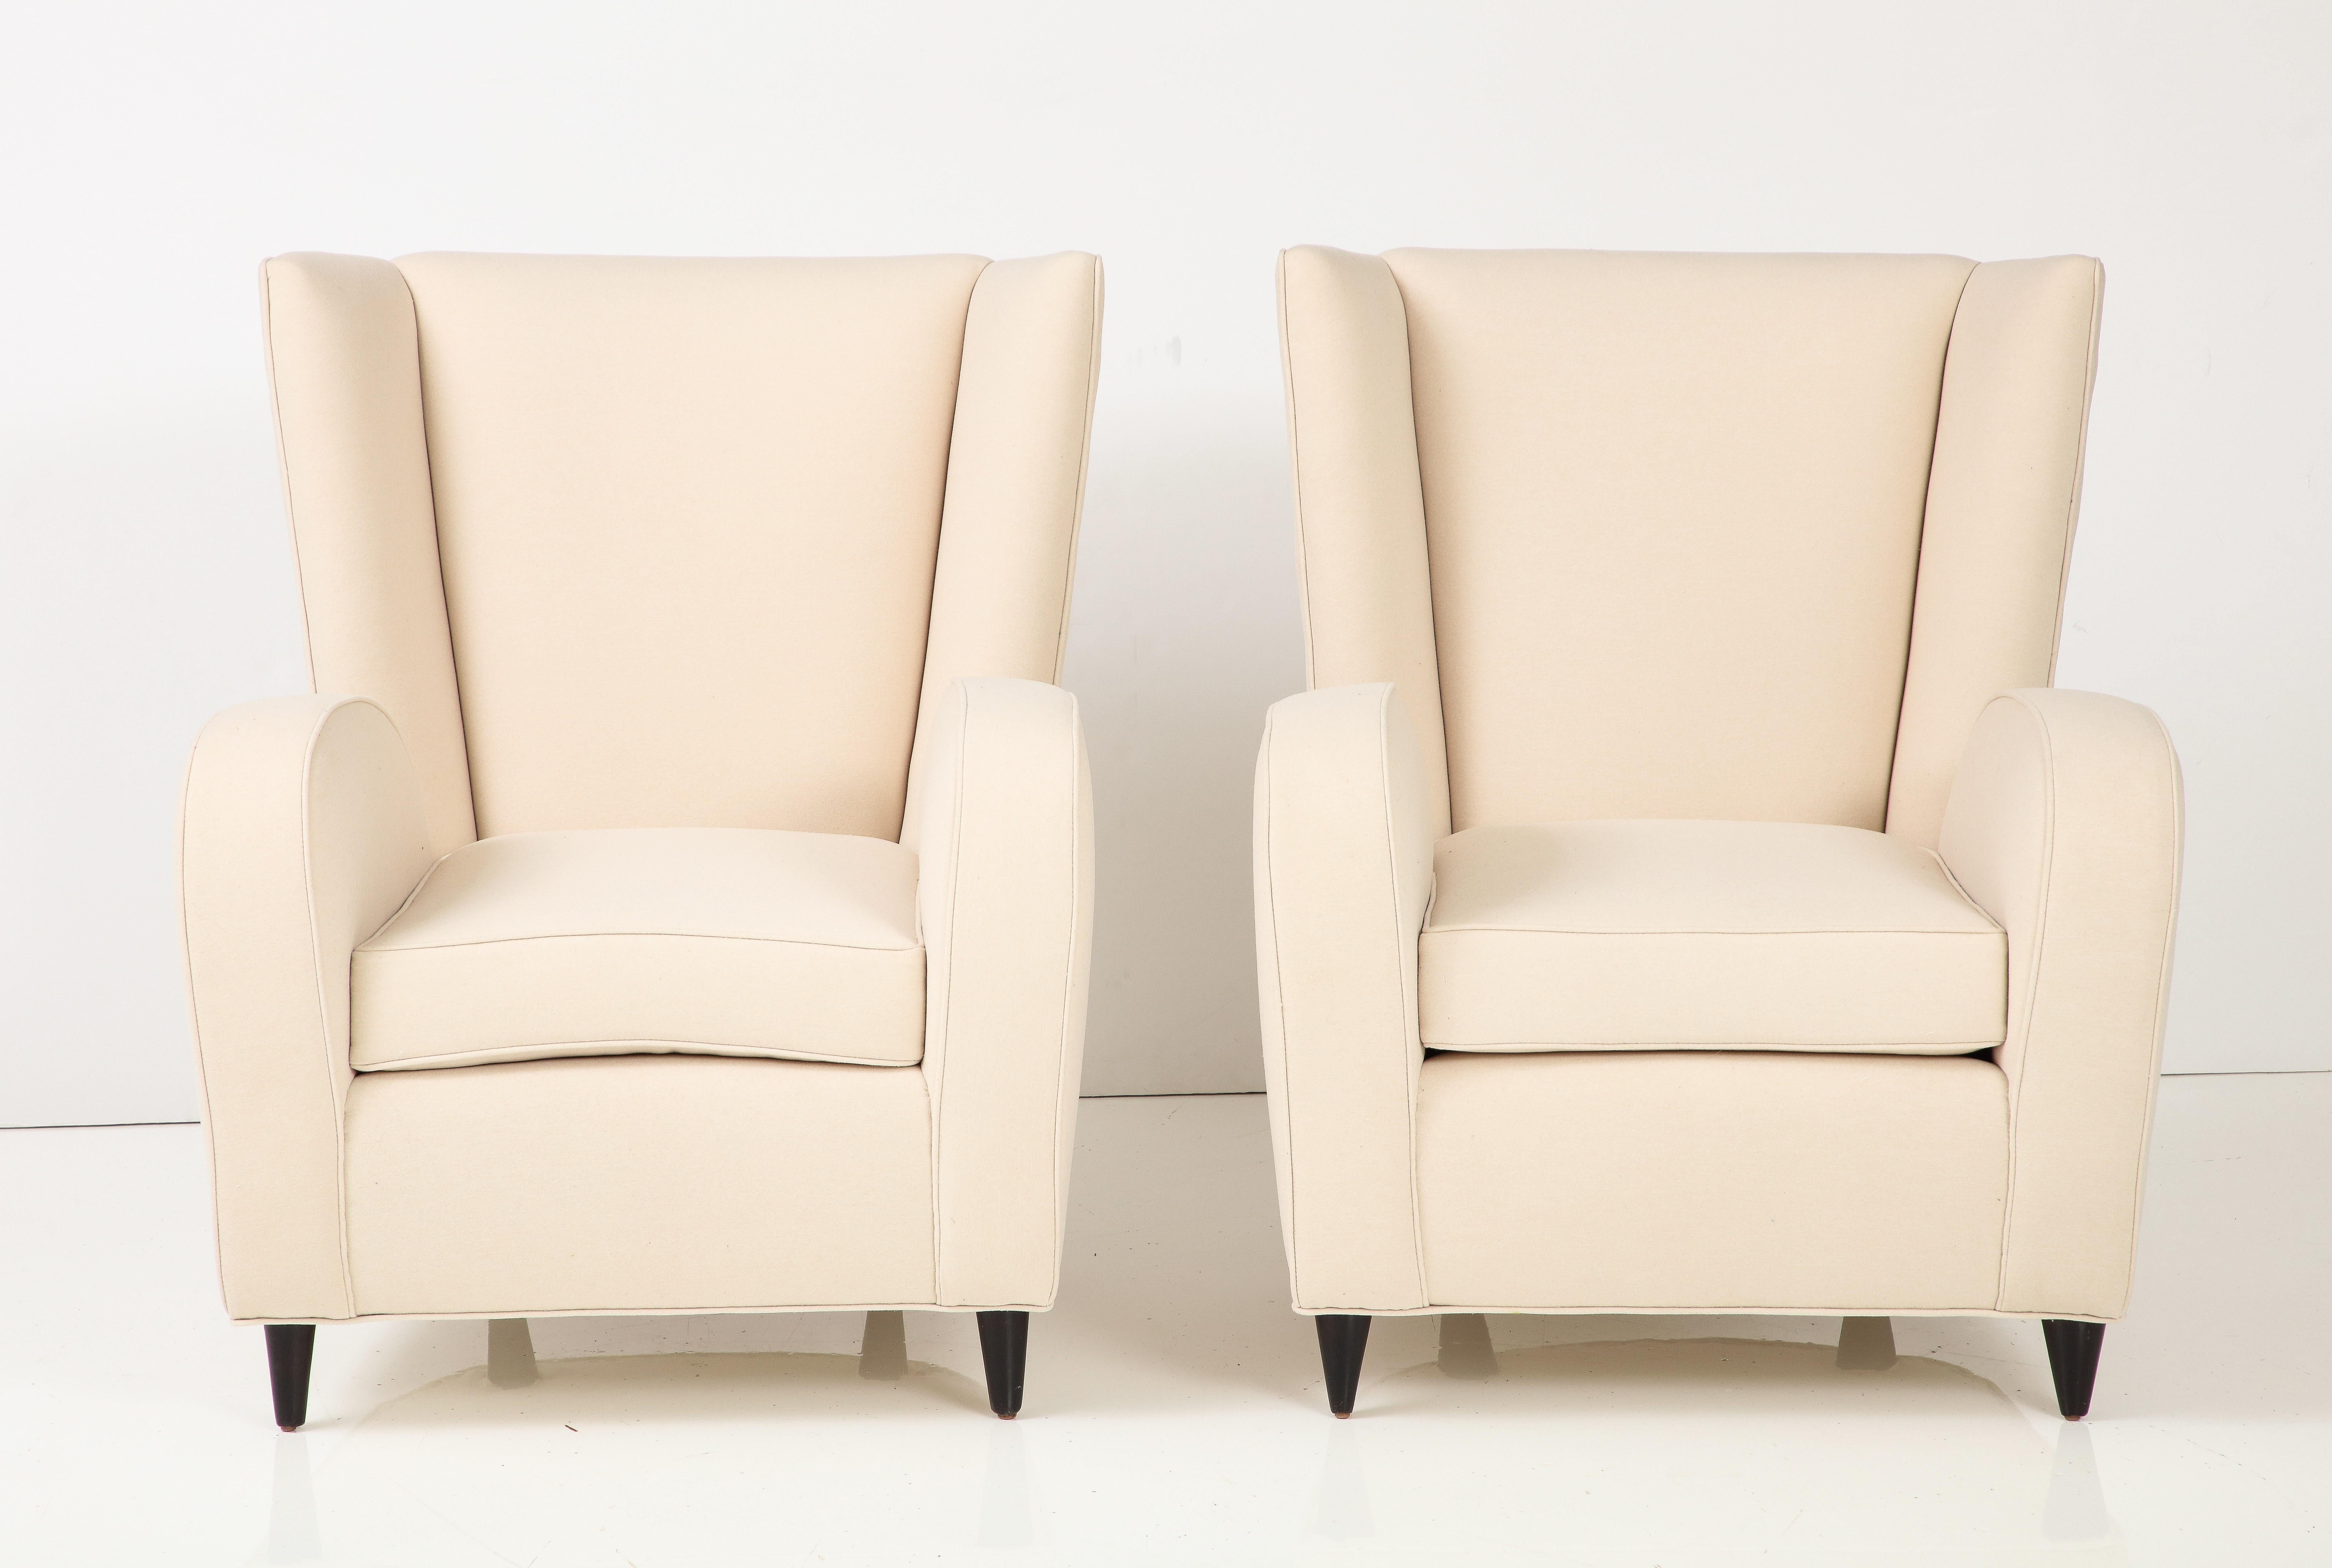 Ein Paar Sessel von Paolo Buffa, die 1950 für das Hotel Bristol in Meran, einem italienischen Ferienort, entworfen wurden. Die Stühle sind bezeichnend für Buffas charakteristischen Stil, modern und schlicht, aber mit einer Anspielung auf die